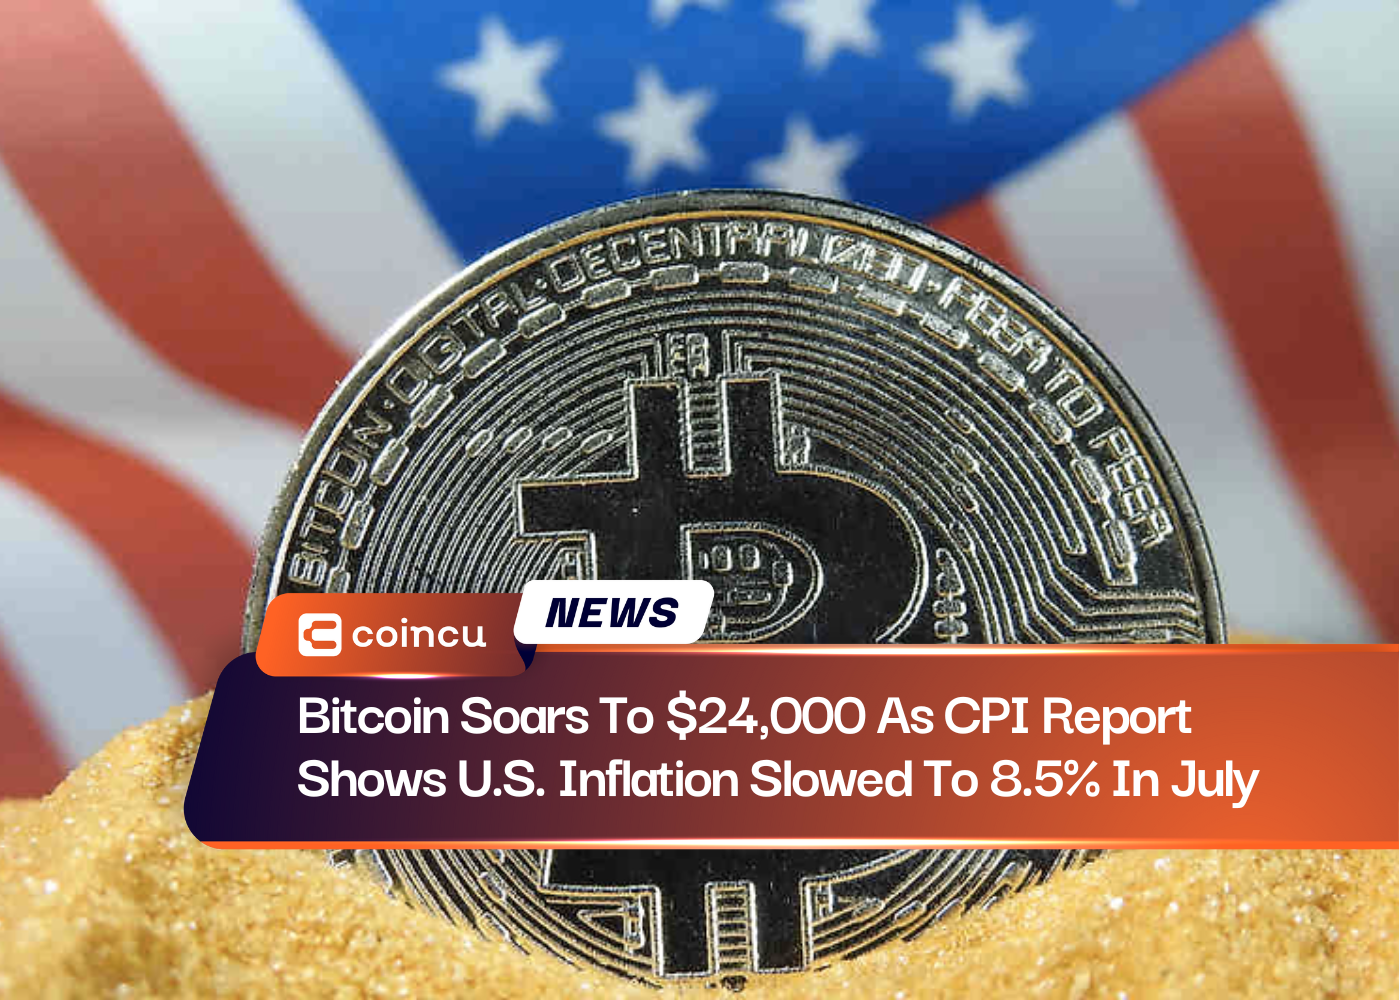 Bitcoin sobe para US$ 24,000 conforme relatório do CPI mostra que a inflação nos EUA desacelerou para 8.5% em julho